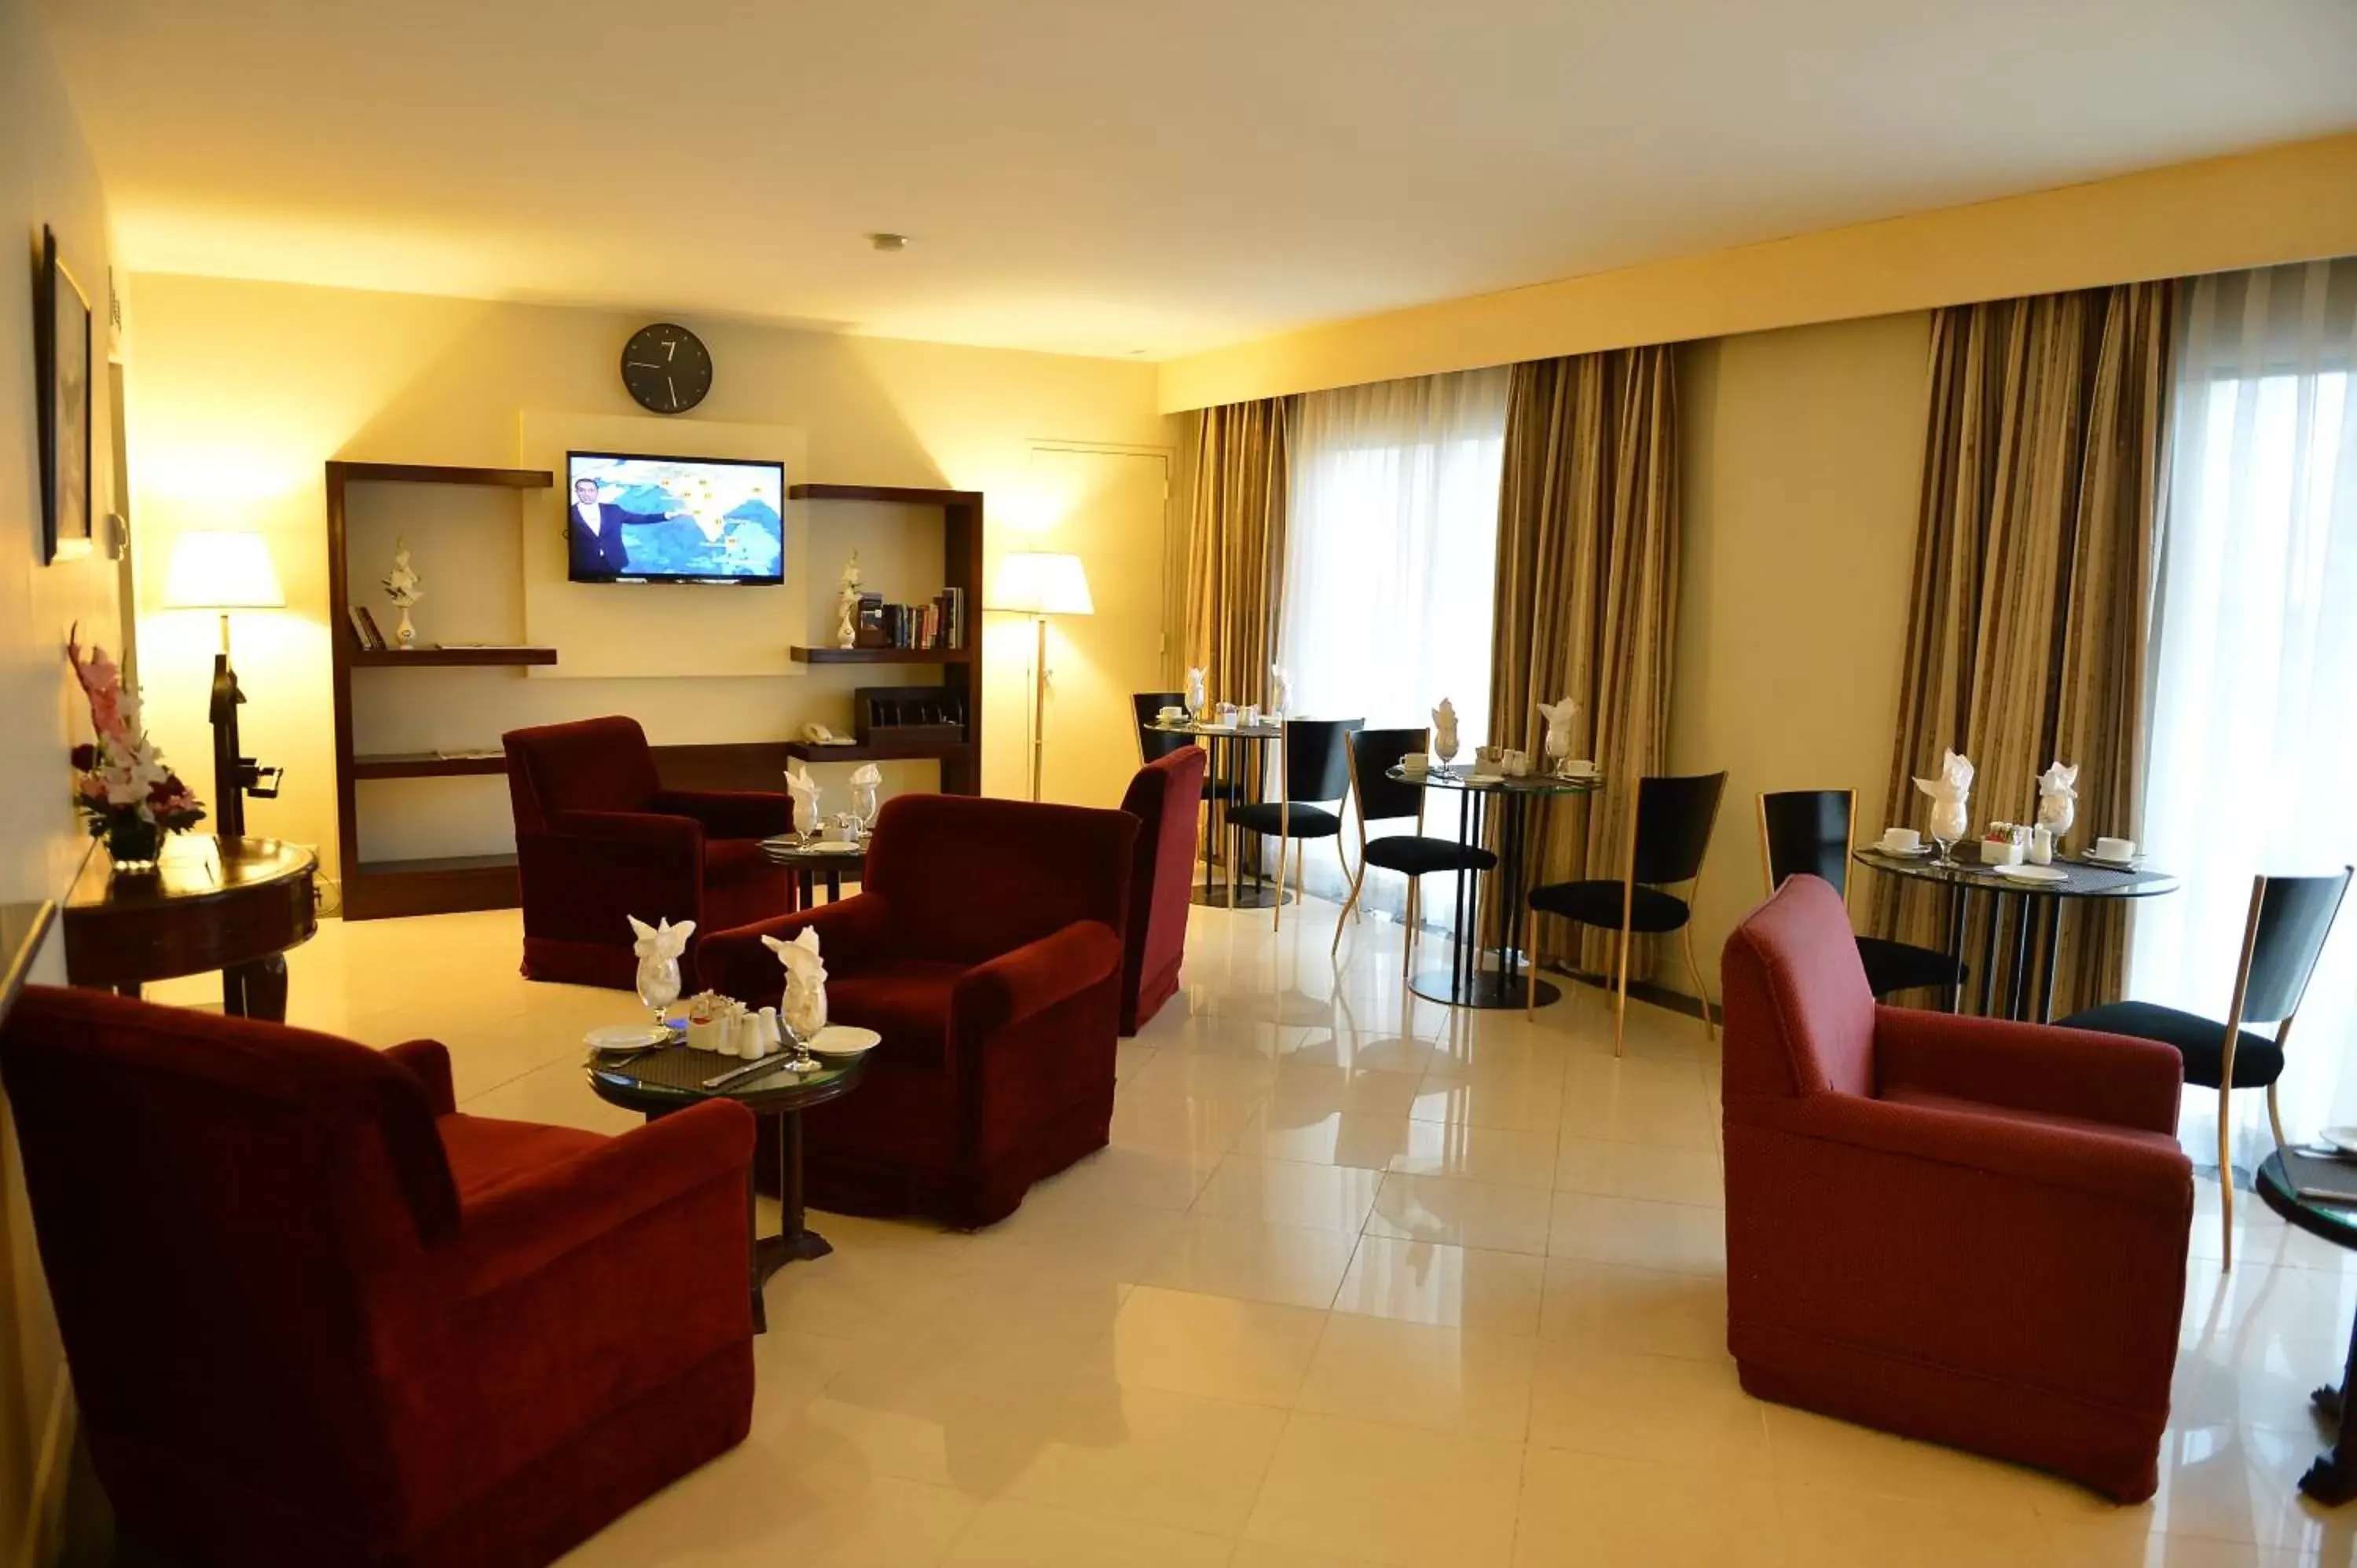 Lounge or bar, Seating Area in Pearl Continental Hotel, Rawalpindi